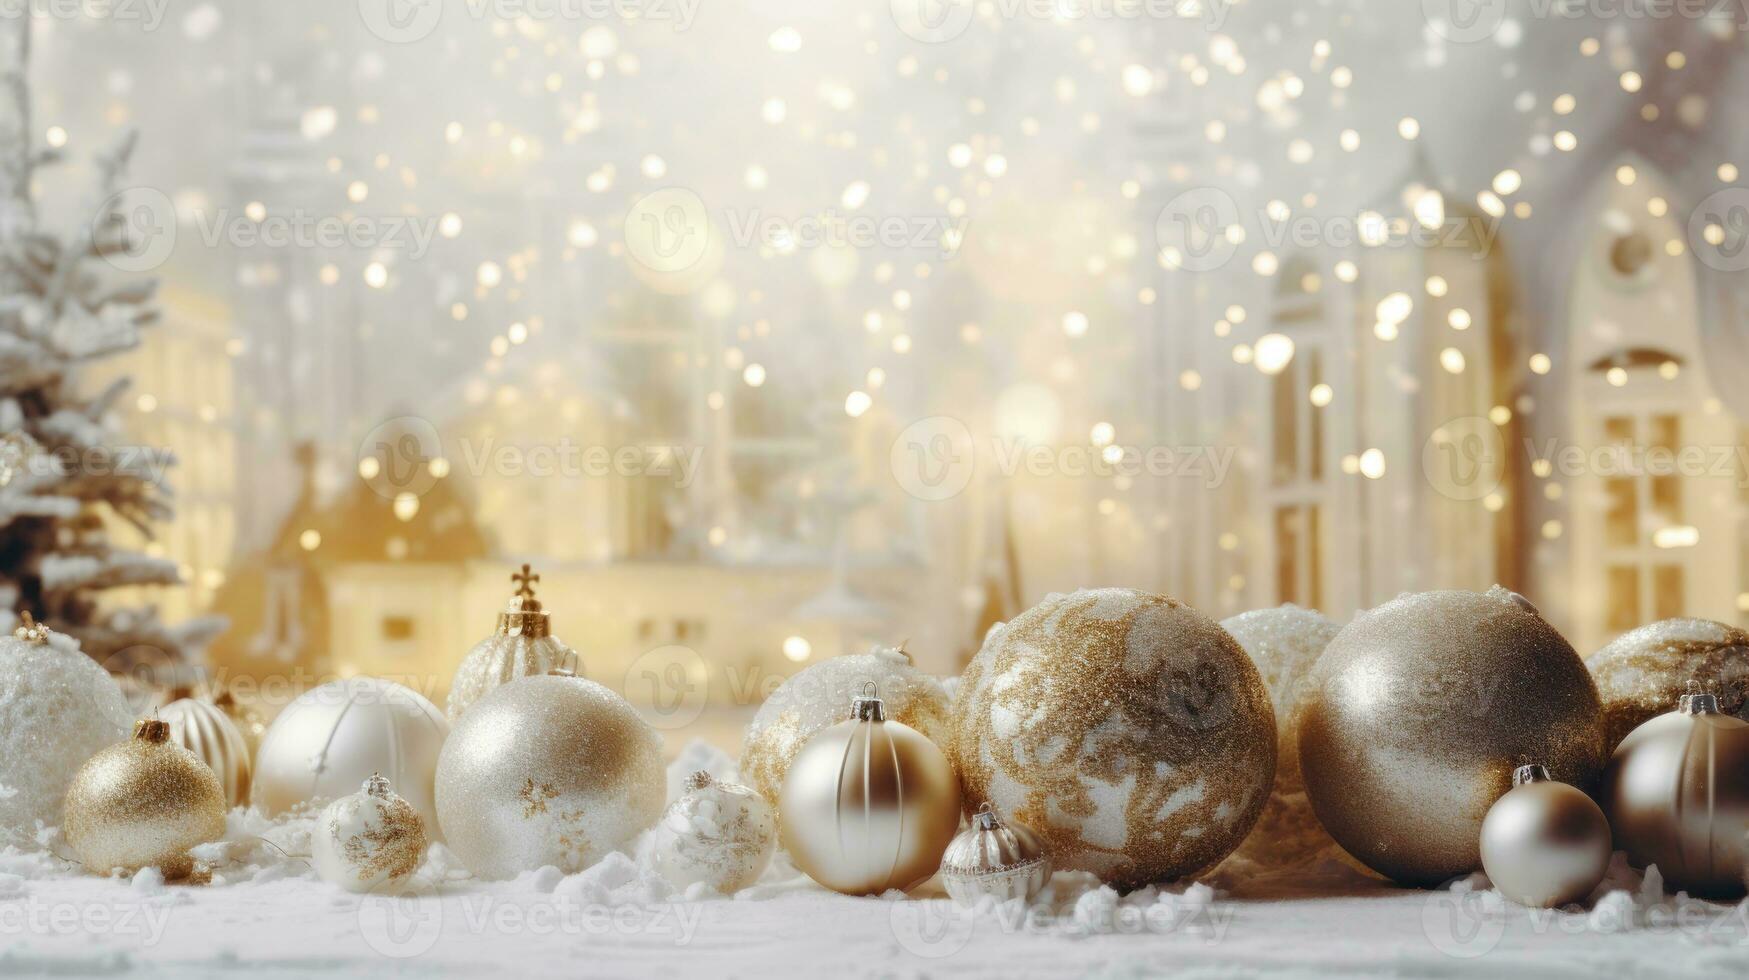 Christmas holiday background photo